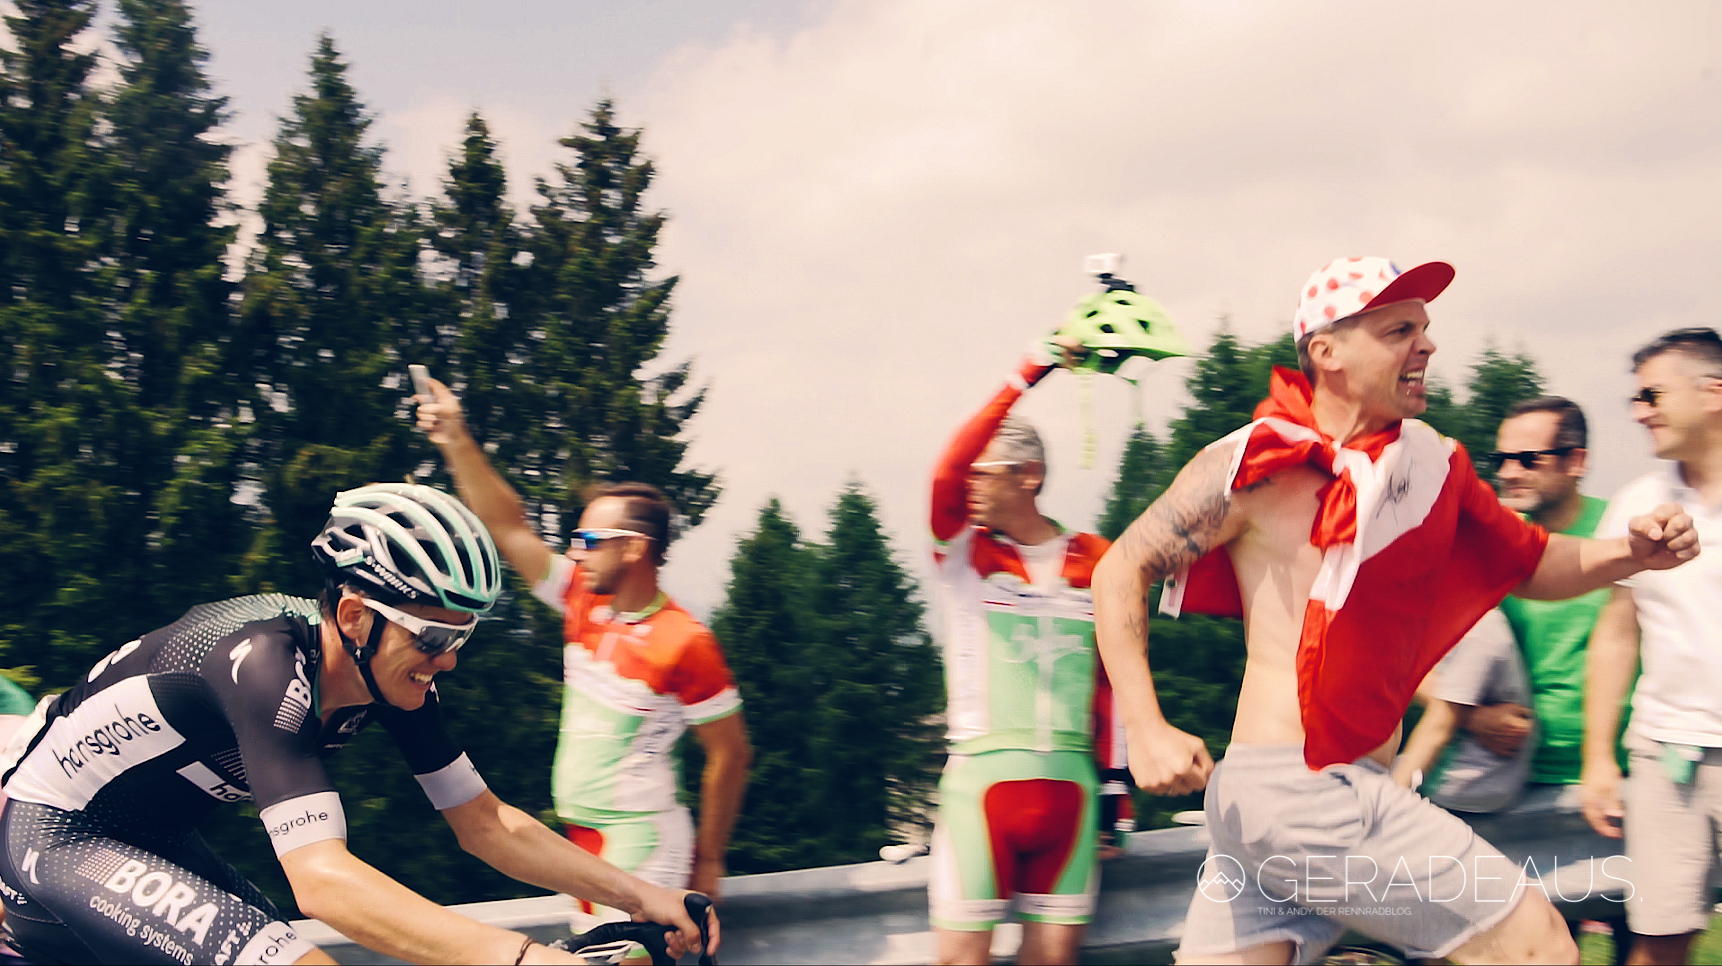 Giro 2017, Rennradblog, Patrick Konrad, Gregor Mühlberger, Lukas Pöstlberger, Bora Hansgrohe, Pro Tour Team, geradeaus, Tini, Andy, Mailand, Zeitfahren, Stage, Monte Grappa